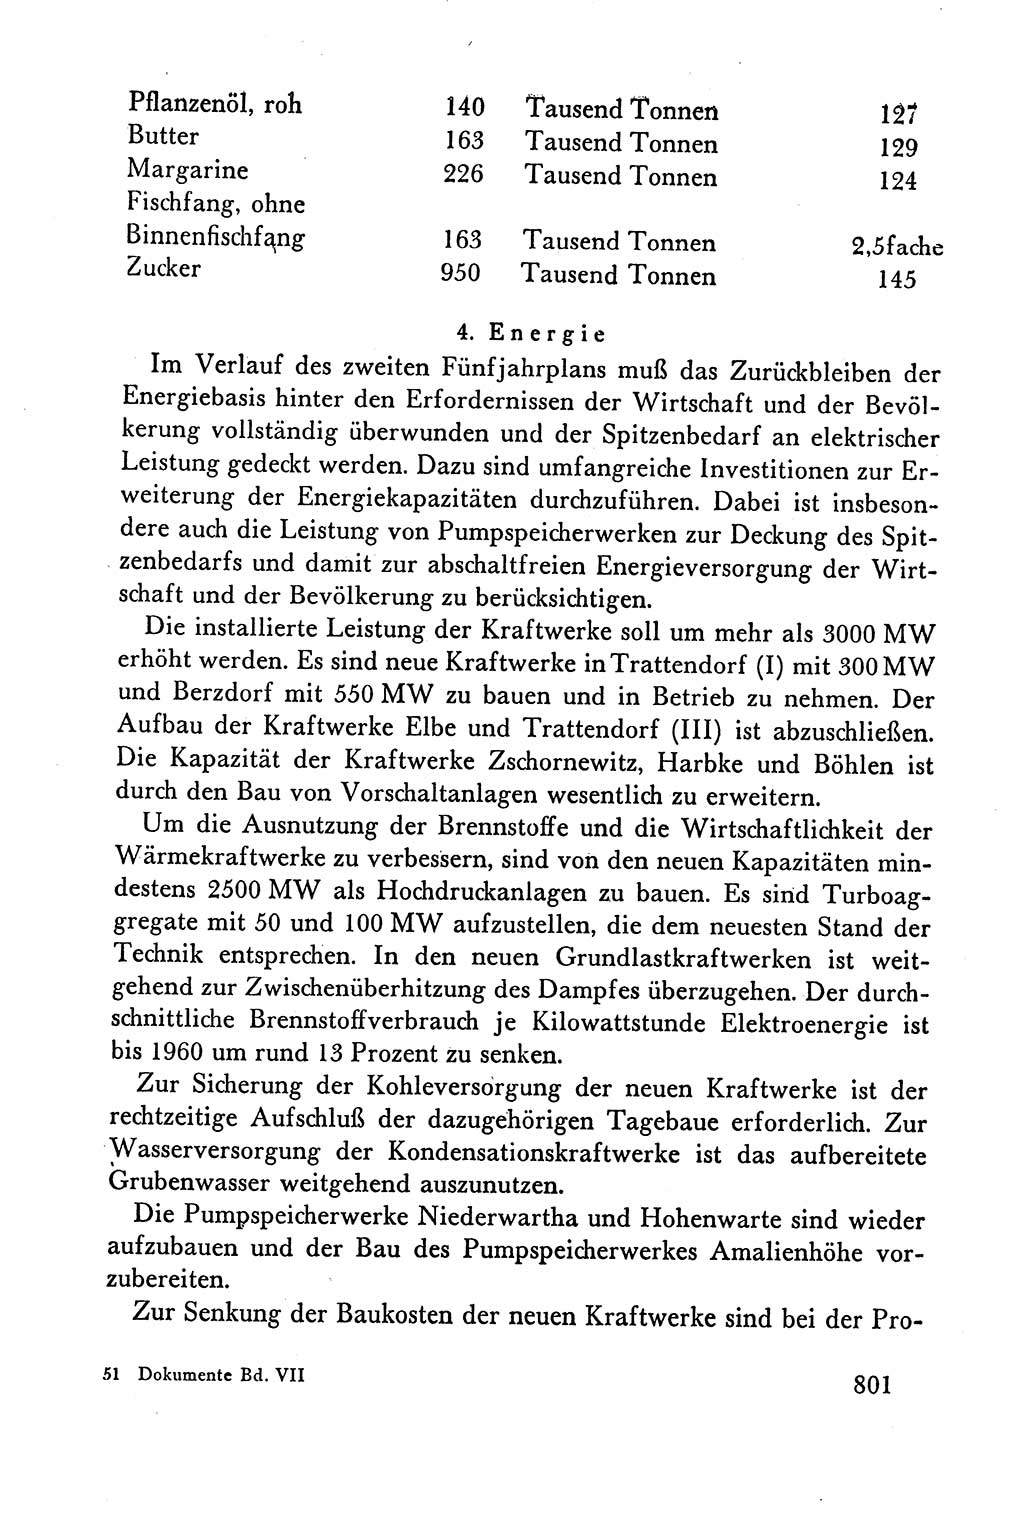 Dokumente der Sozialistischen Einheitspartei Deutschlands (SED) [Deutsche Demokratische Republik (DDR)] 1958-1959, Seite 801 (Dok. SED DDR 1958-1959, S. 801)